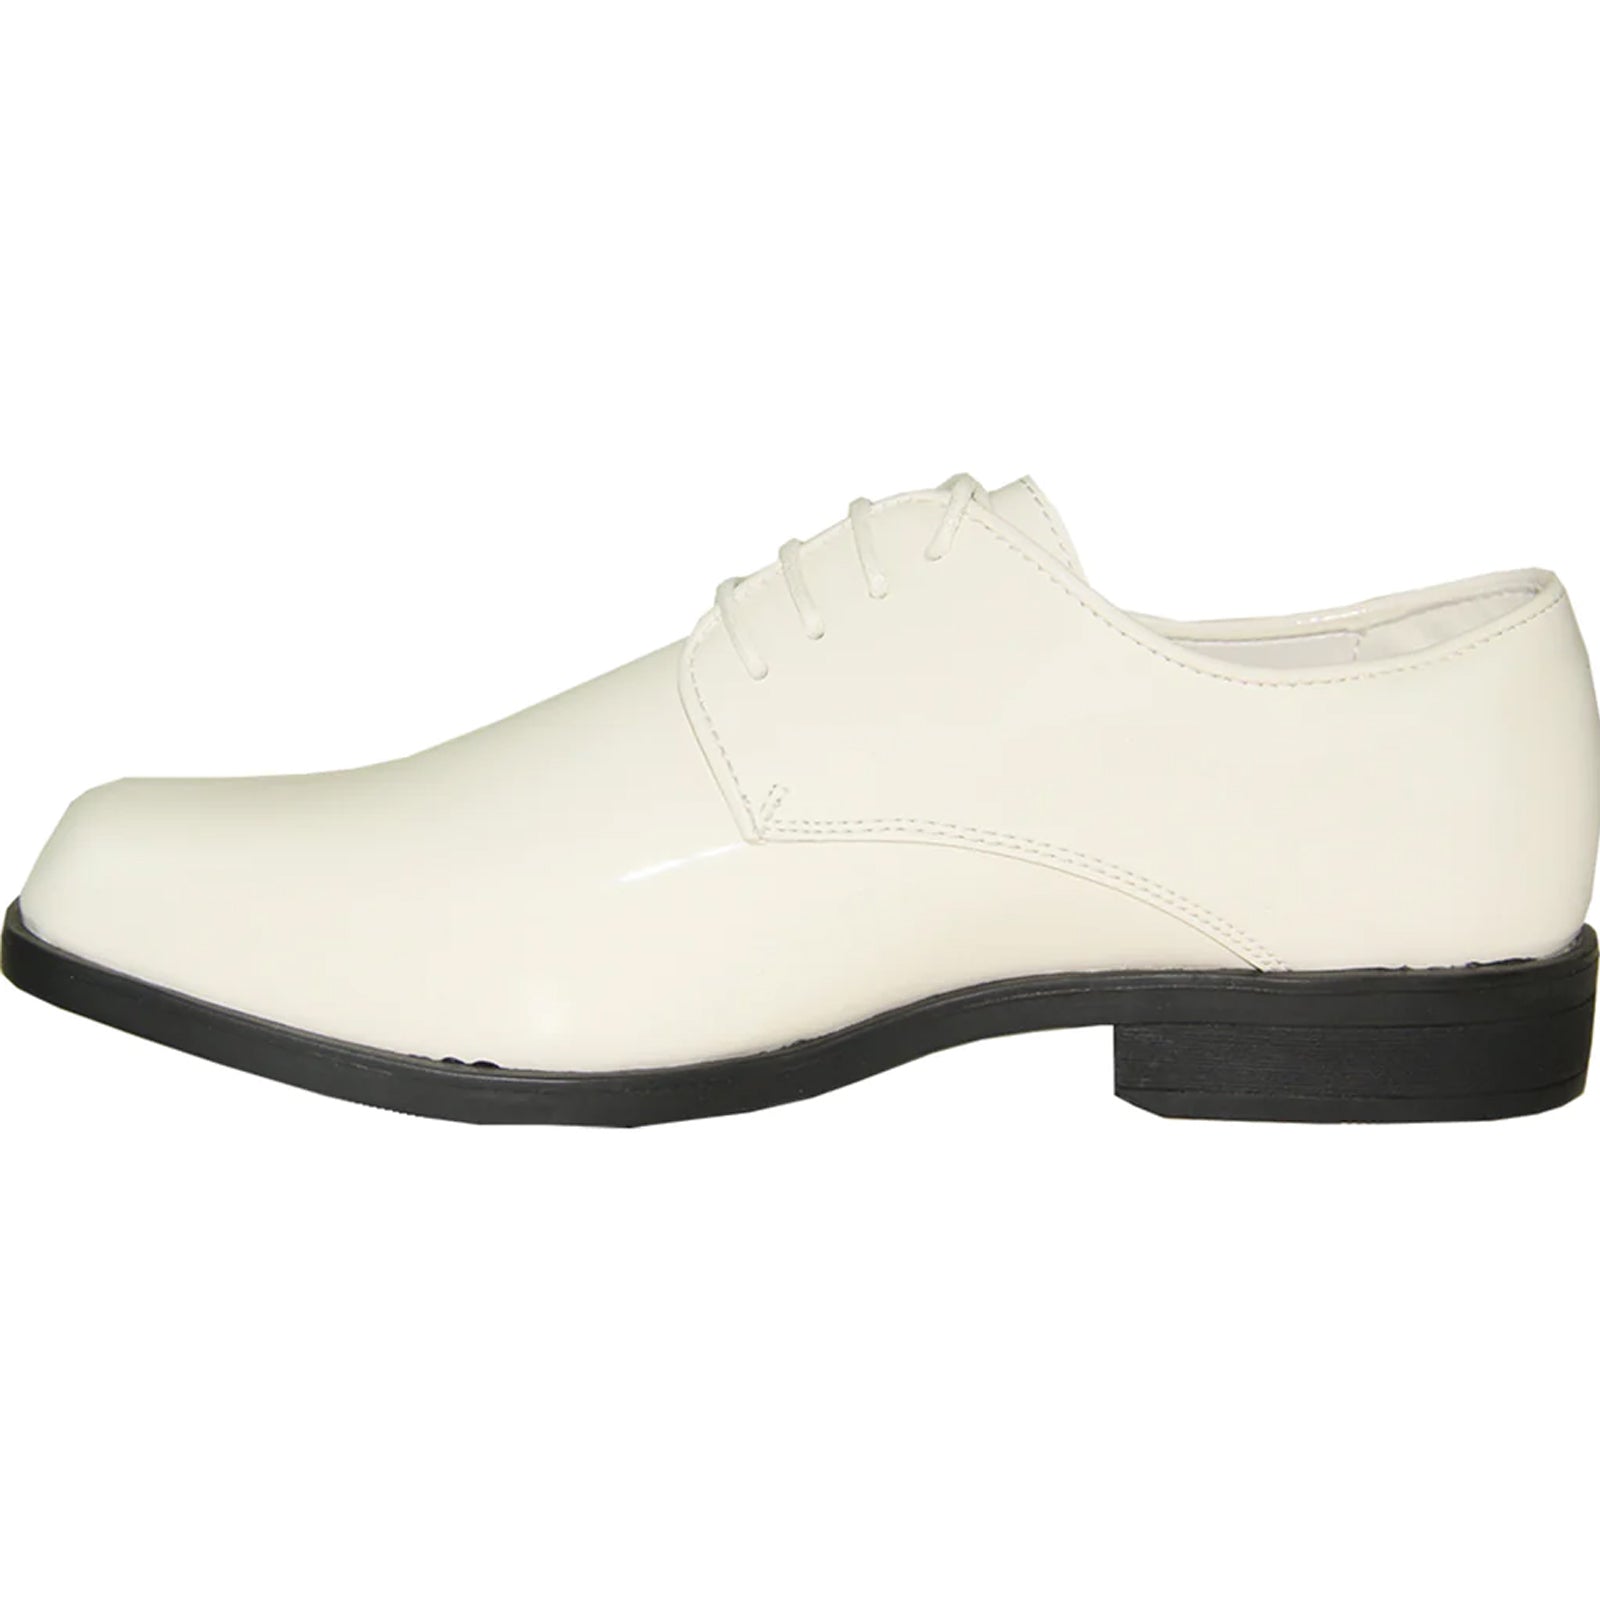 "Ivory Men's Classic Patent Tuxedo Dress Shoe - Square Toe"